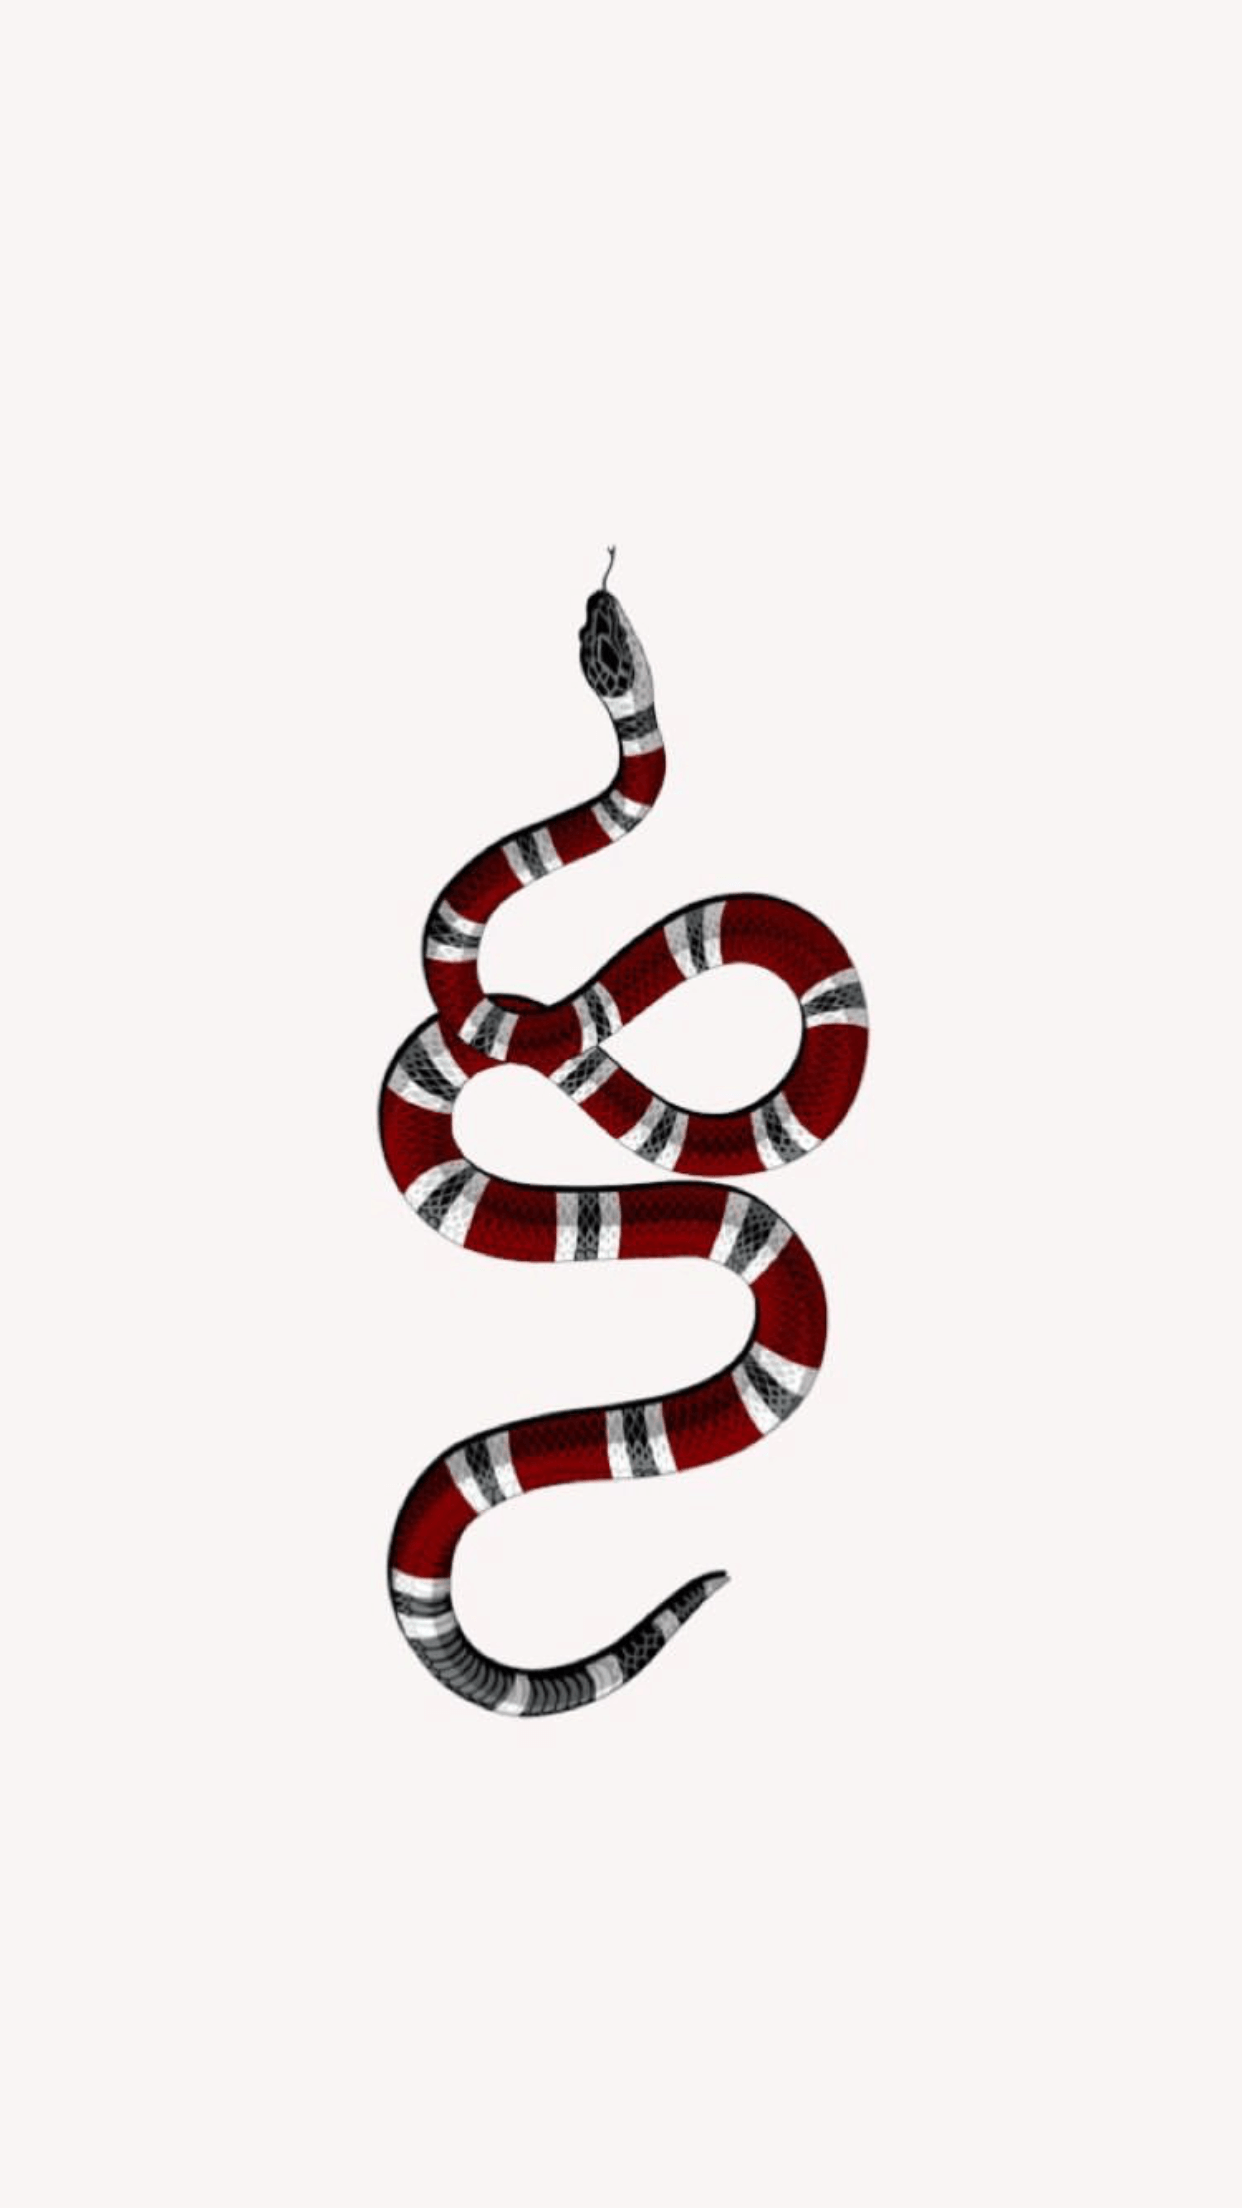 Snake Tumblr Wallpaper